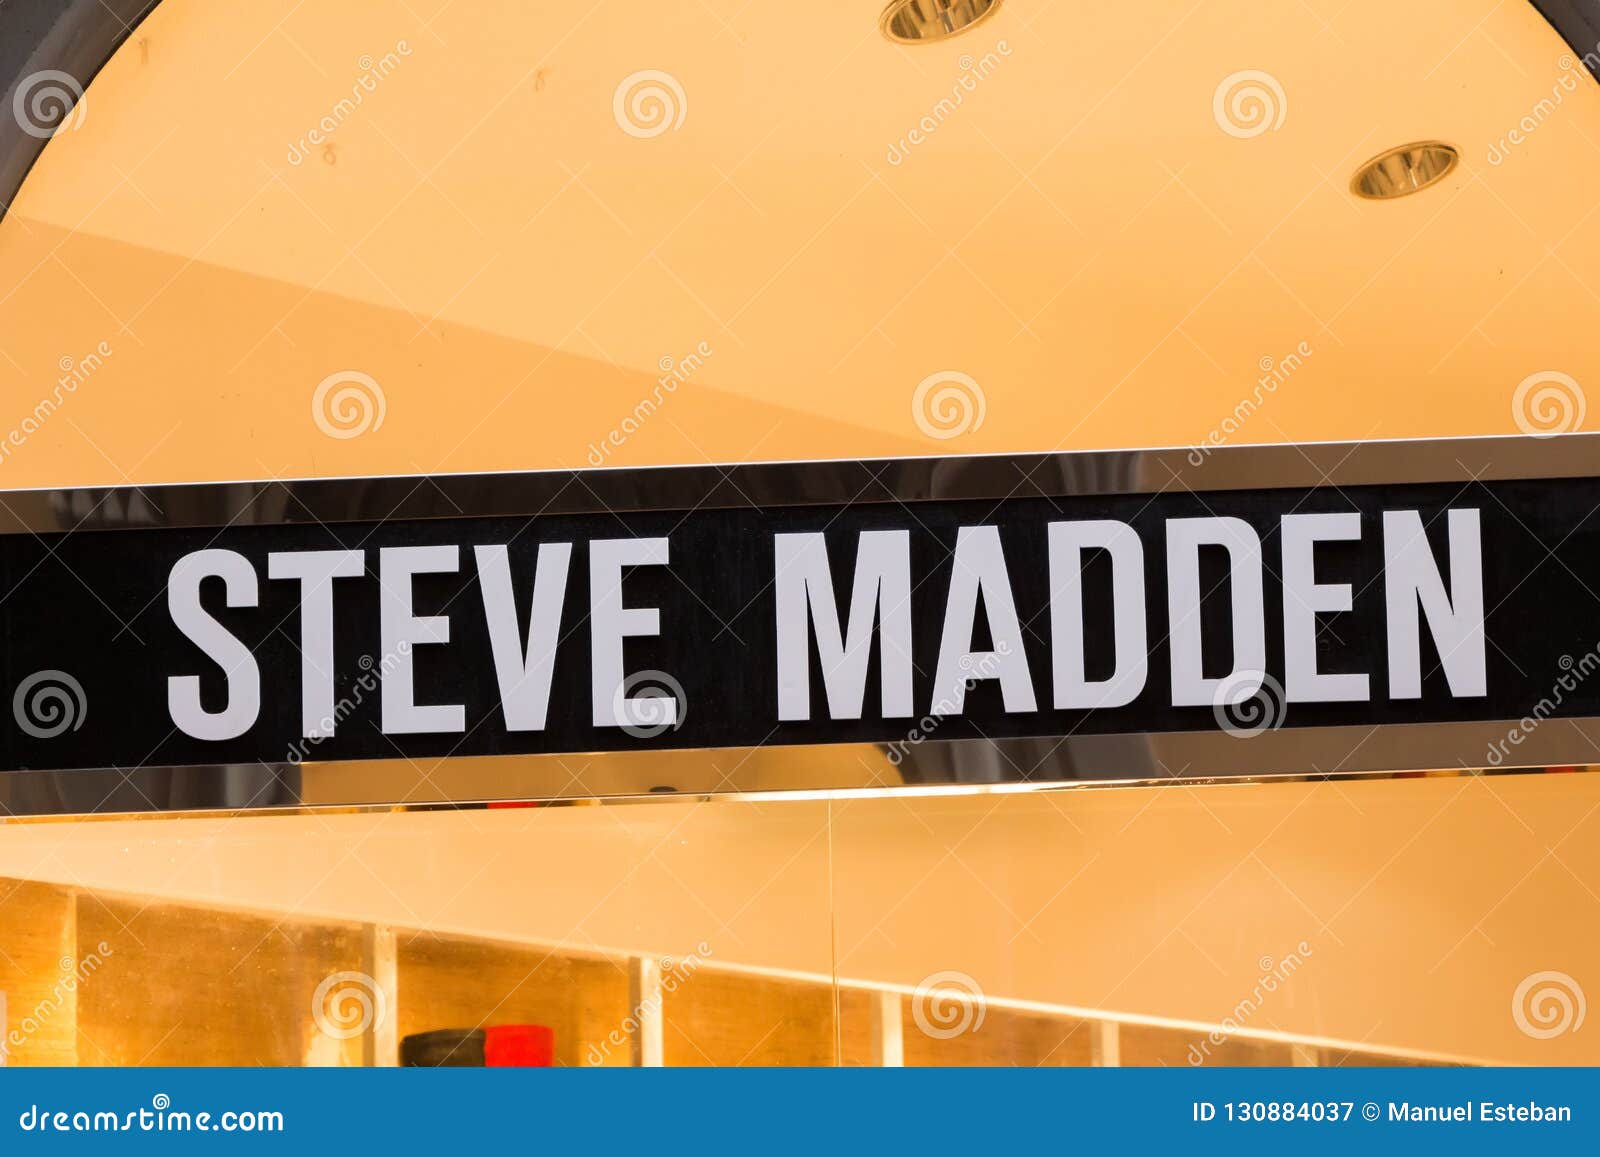 Logotipo De Madden En La Tienda De Steve Madden Fotografía editorial - Imagen grupo, maduro: 130884037